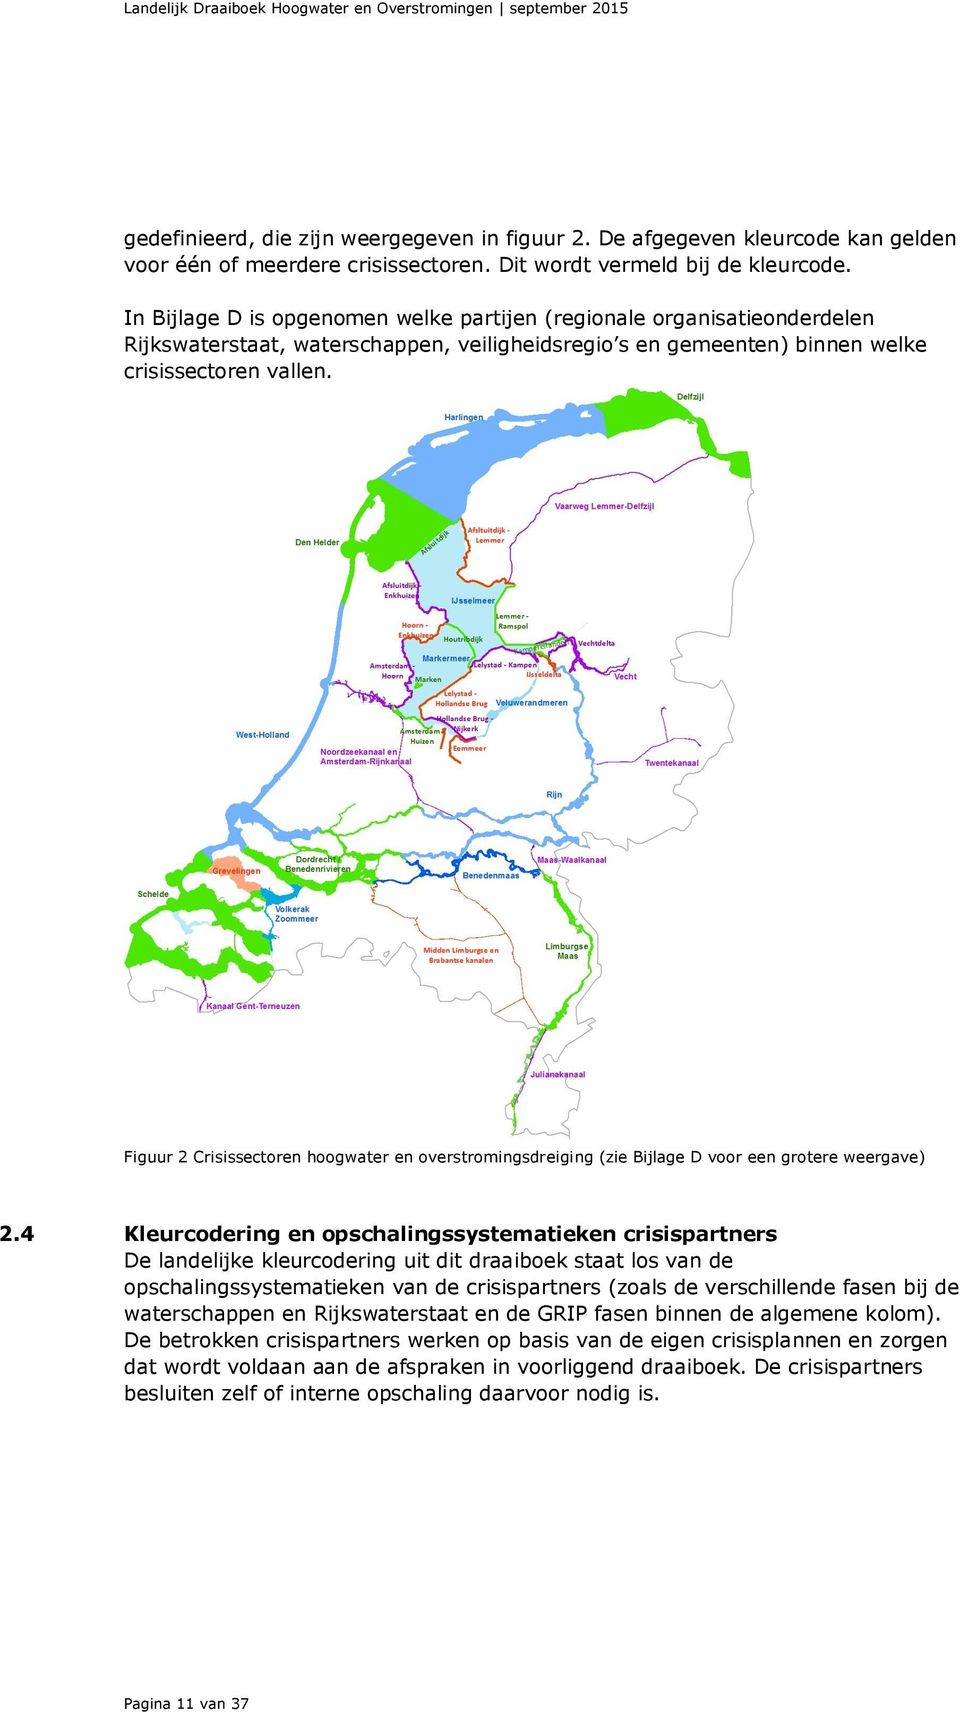 In Bijlage D is opgenomen welke partijen (regionale organisatieonderdelen Rijkswaterstaat, waterschappen, veiligheidsregio s en gemeenten) binnen welke crisissectoren vallen.